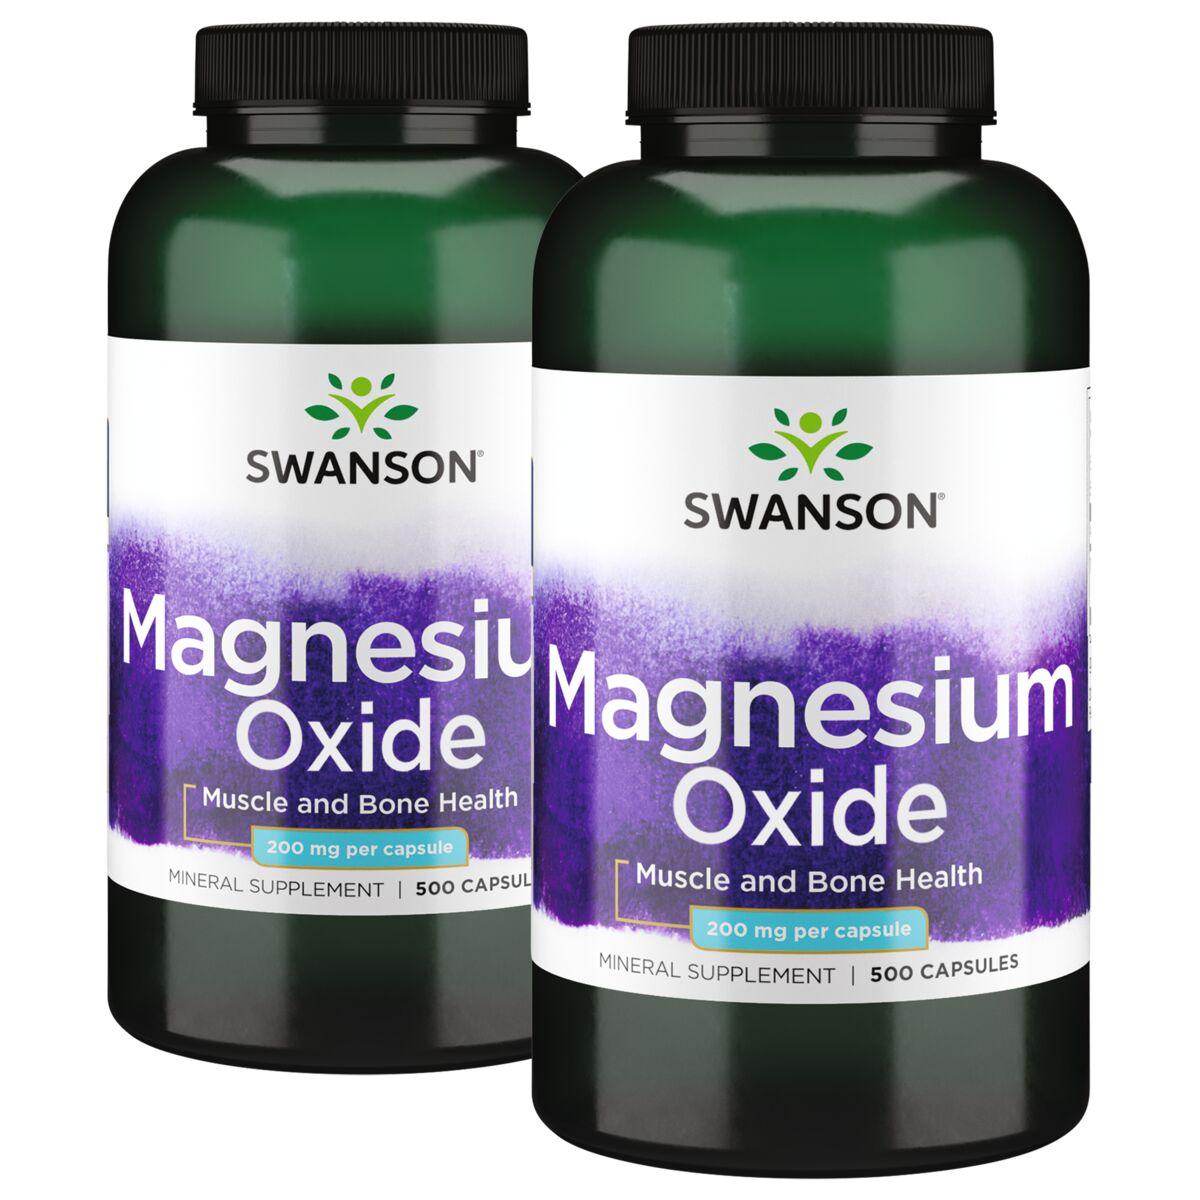 Swanson Premium Magnesium Oxide - 2 Pack Vitamin 200 mg 500 Caps Per Bottle